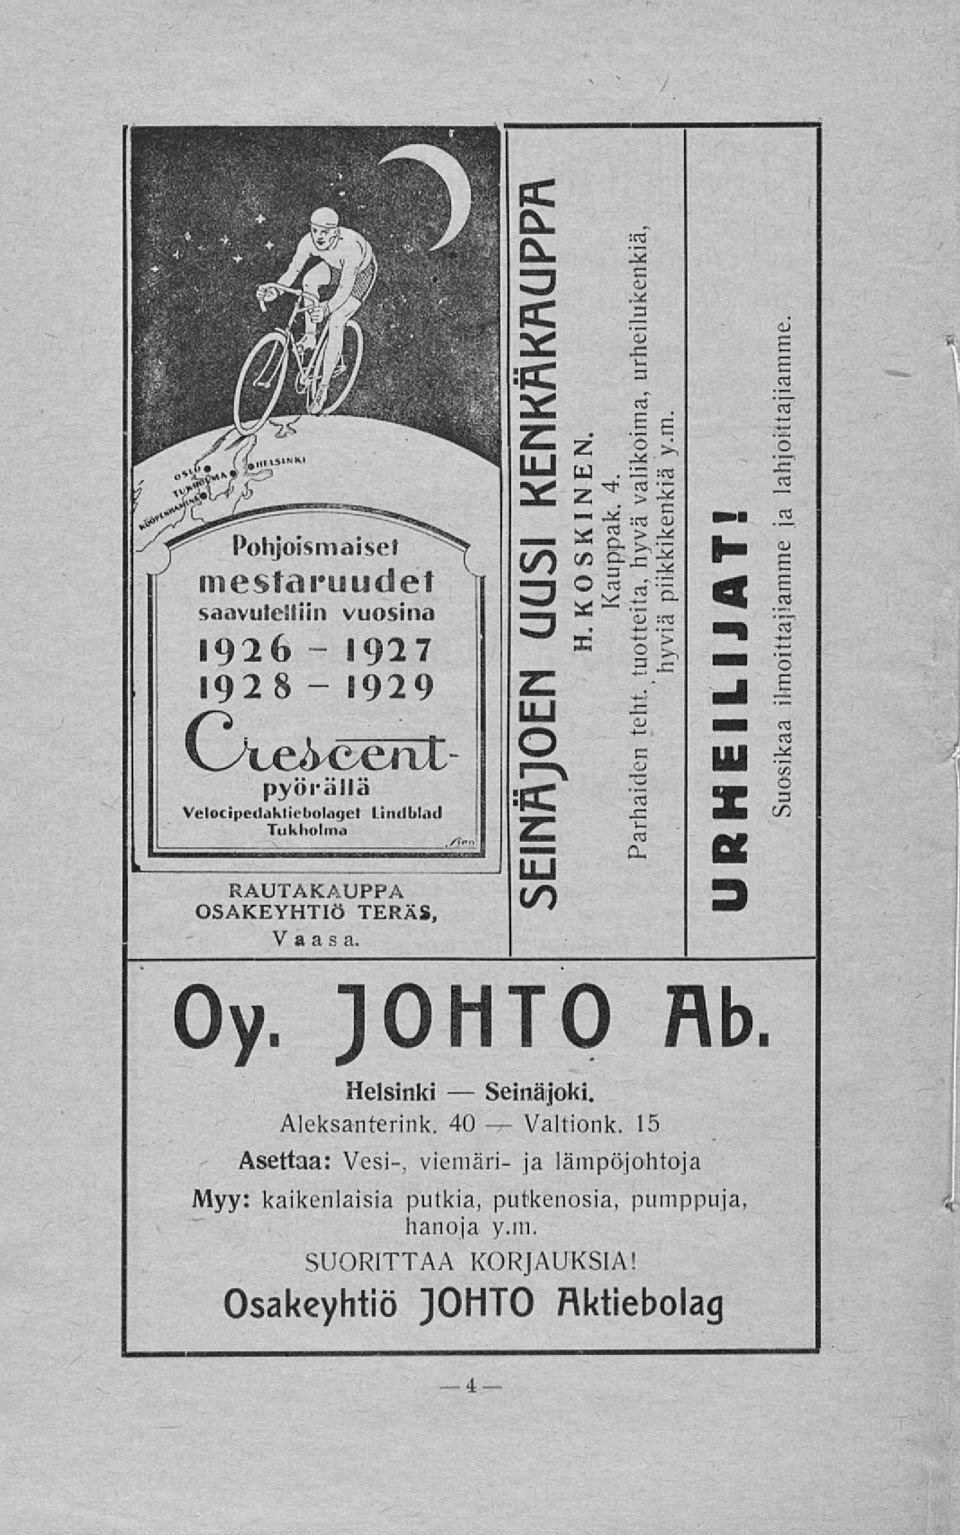 1929 pyörällä Velocipedakliebolaget Lindblad Tukholma,/J-n k. RAUTAKAUPPA OSAKEYHTIÖ TERÄS, Vaasa. Oy. Helsinki Seinäjoki. Aieksanterink.